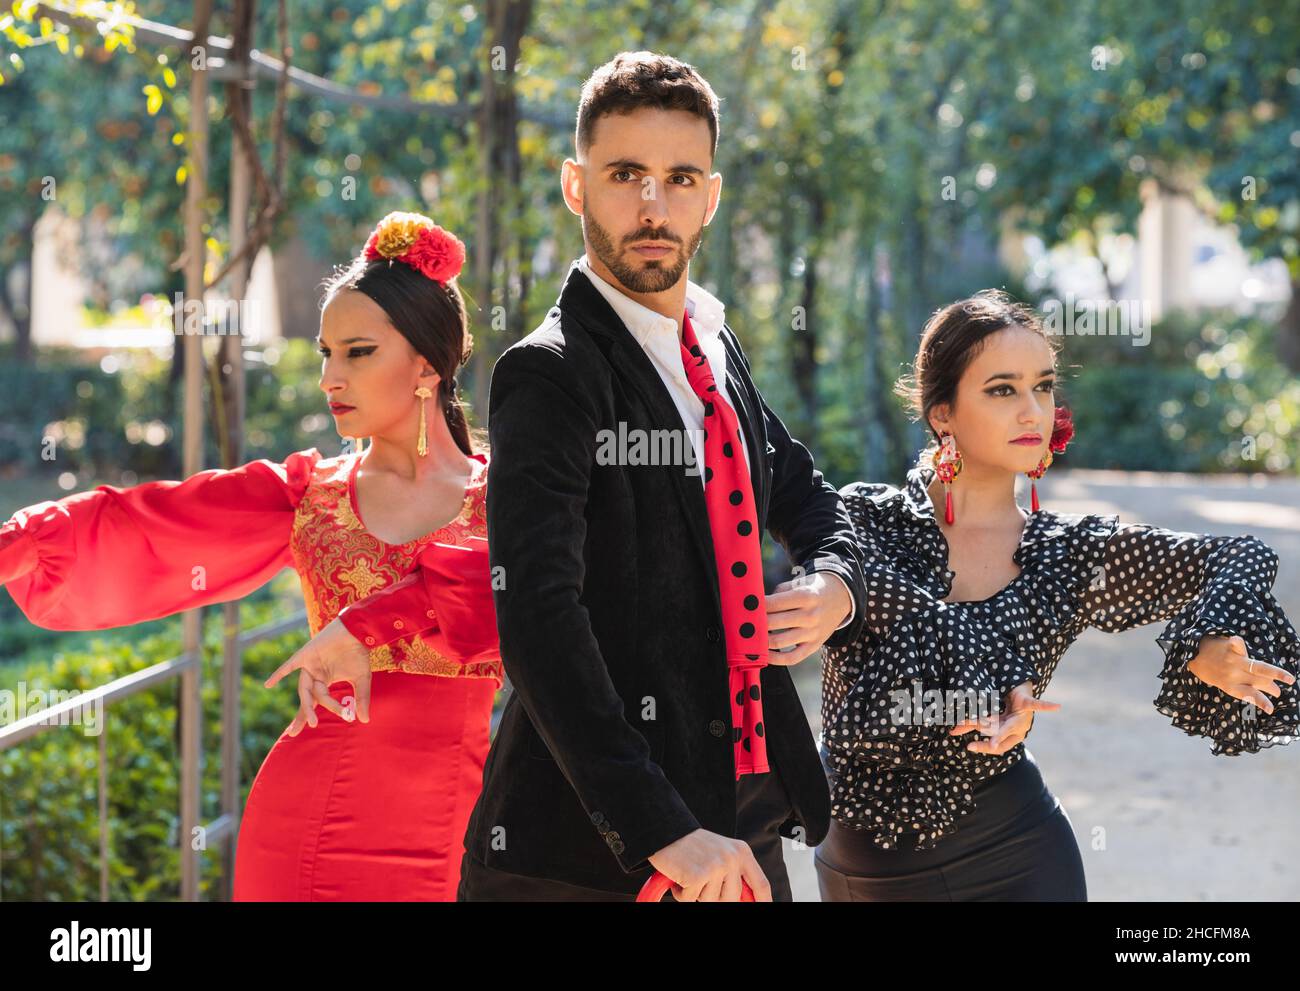 Trois personnes en robe traditionnelle flamenco danse flamenco en plein air Banque D'Images